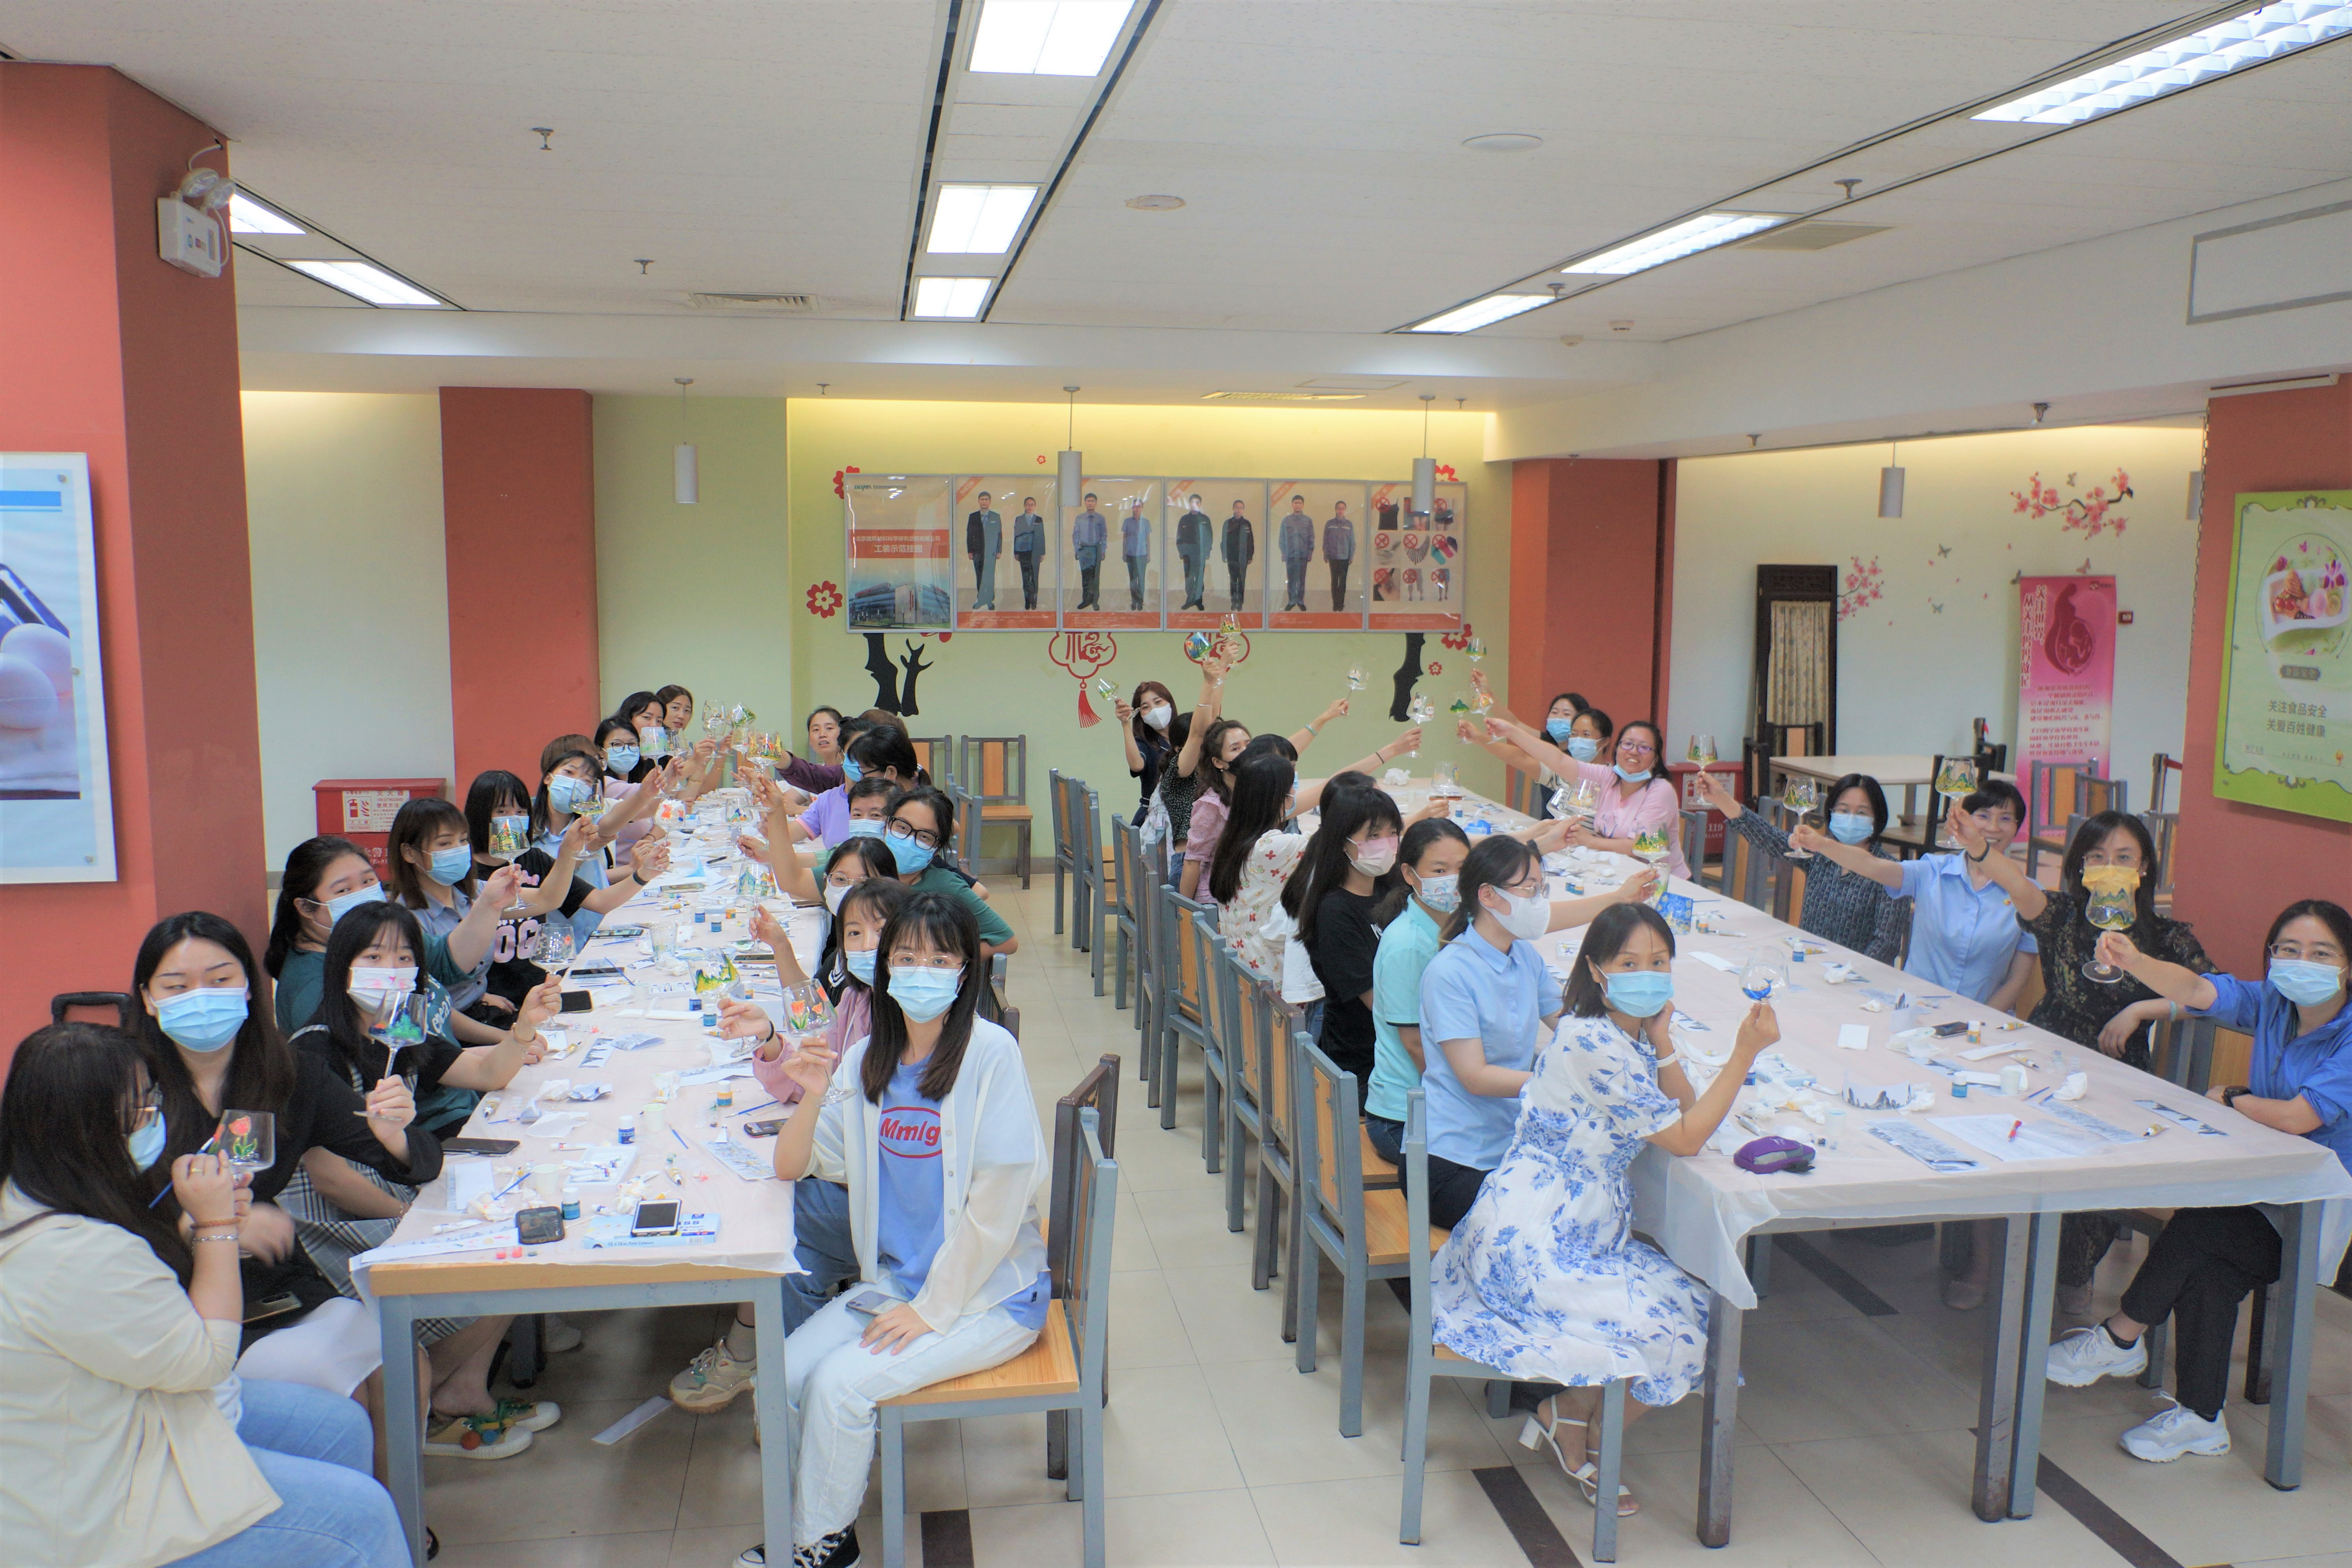 永利皇宫32444官网版女工委组织开展“彩绘玻璃” 创意手工活动